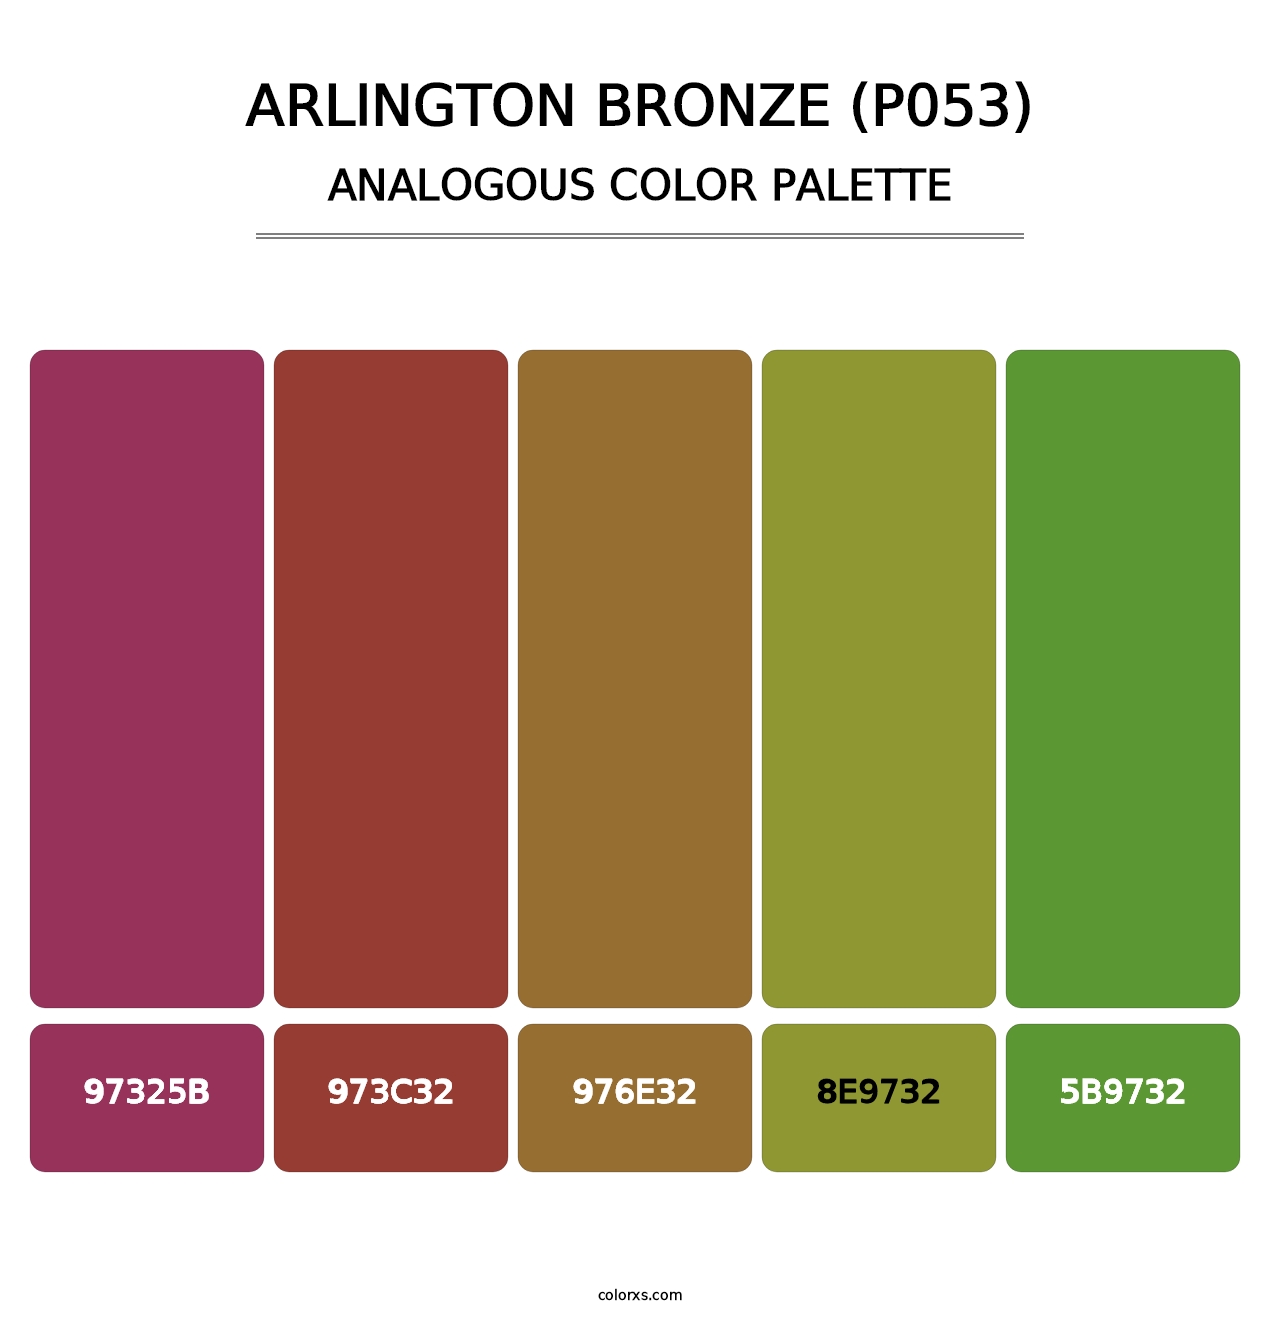 Arlington Bronze (P053) - Analogous Color Palette